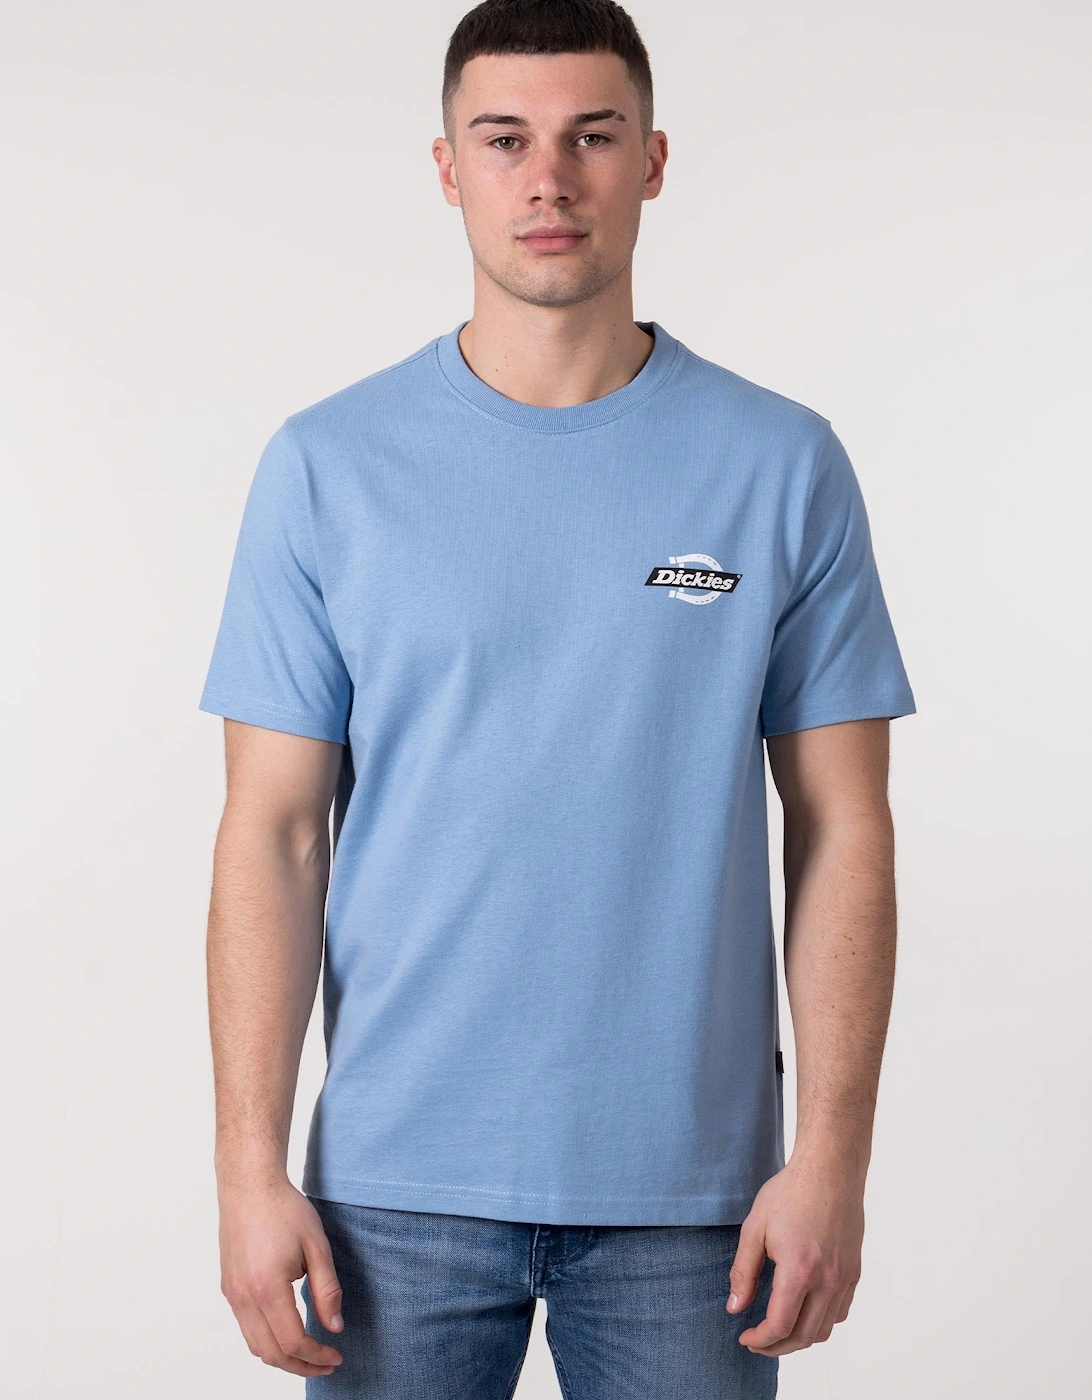 Ruston T-Shirt